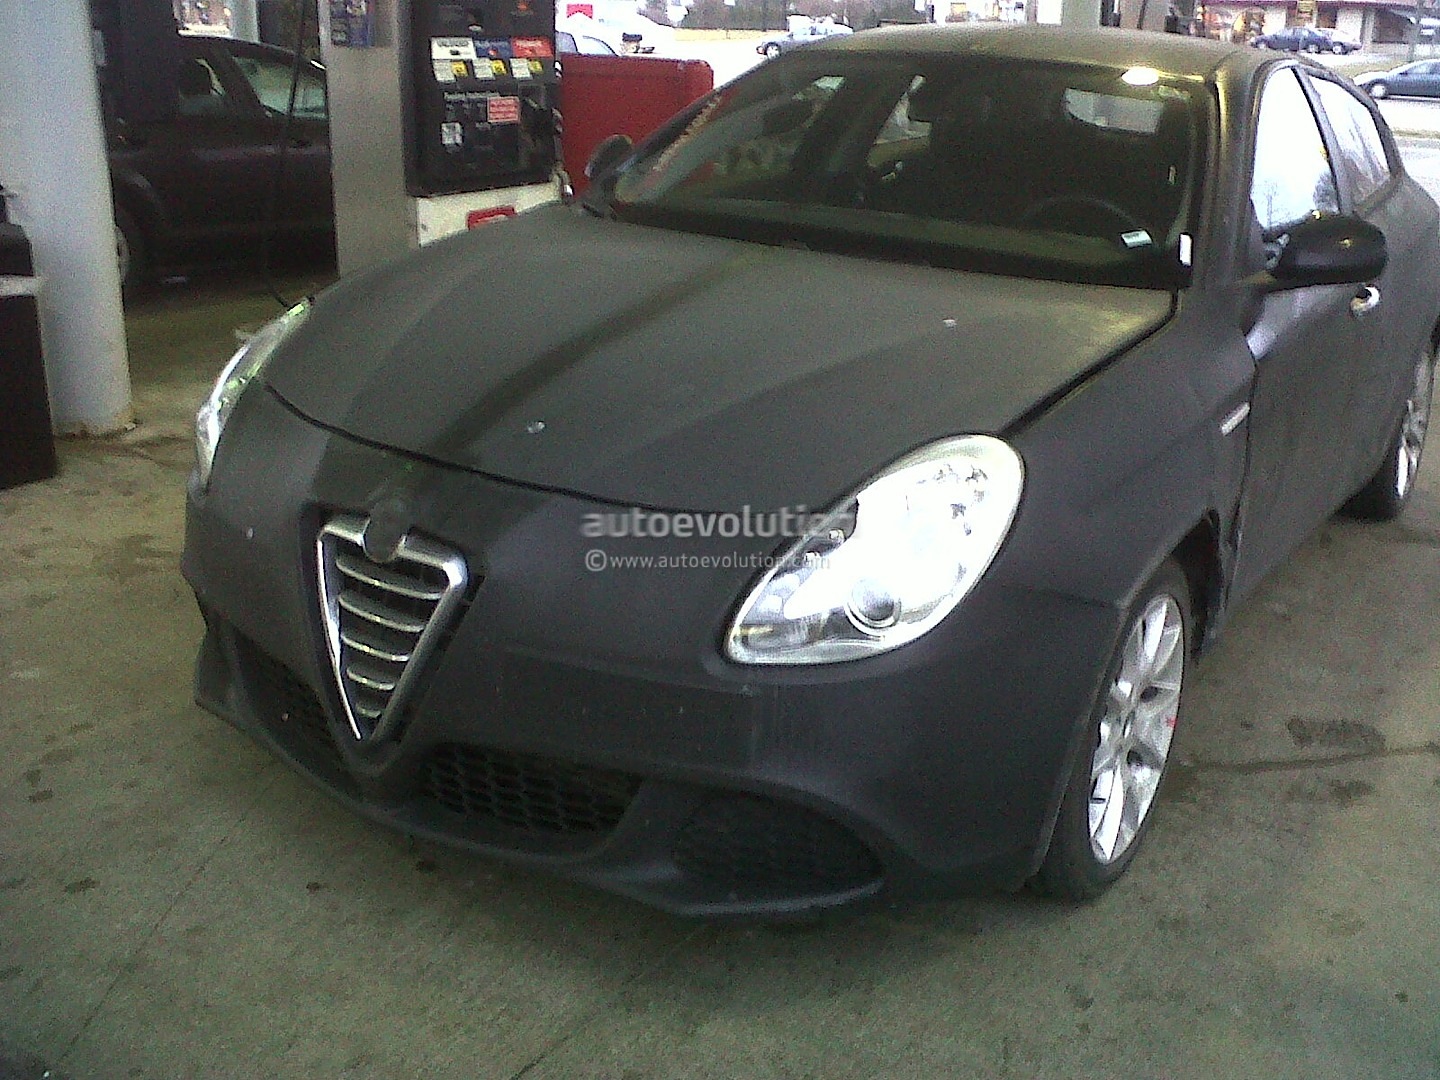 Spyshots: Alfa Romeo Giulietta Spotted in America! - autoevolution